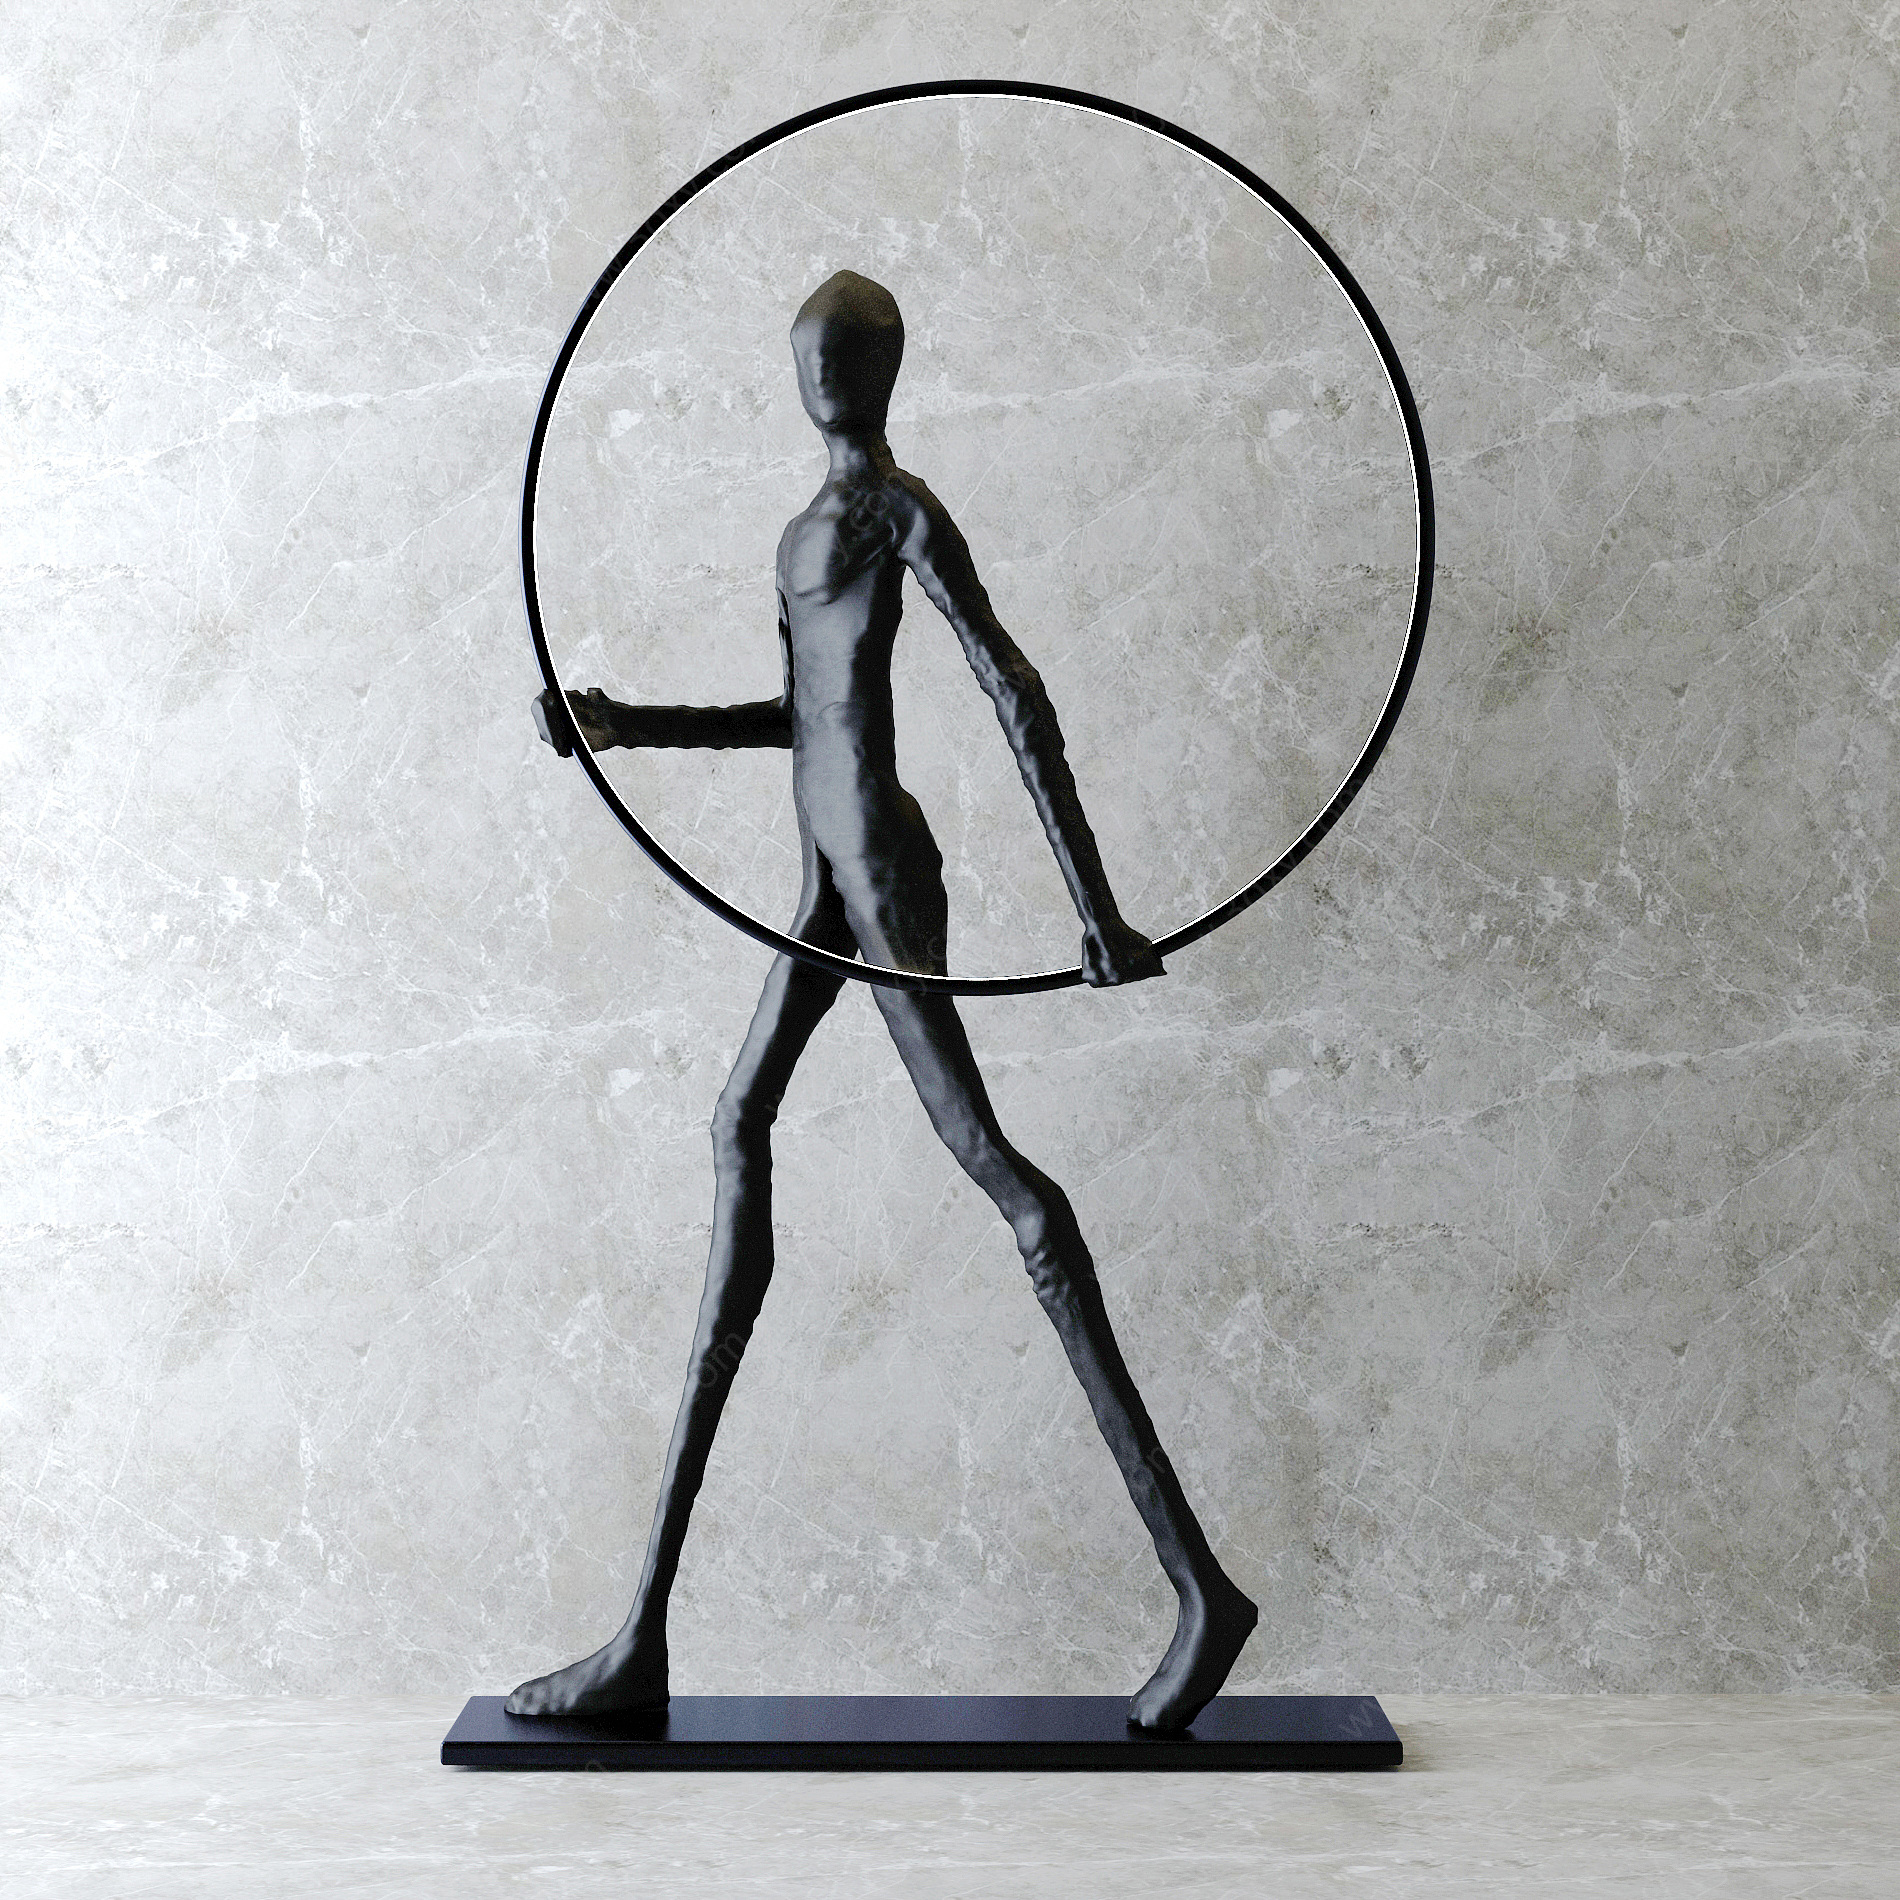 抽象人物雕塑3D模型